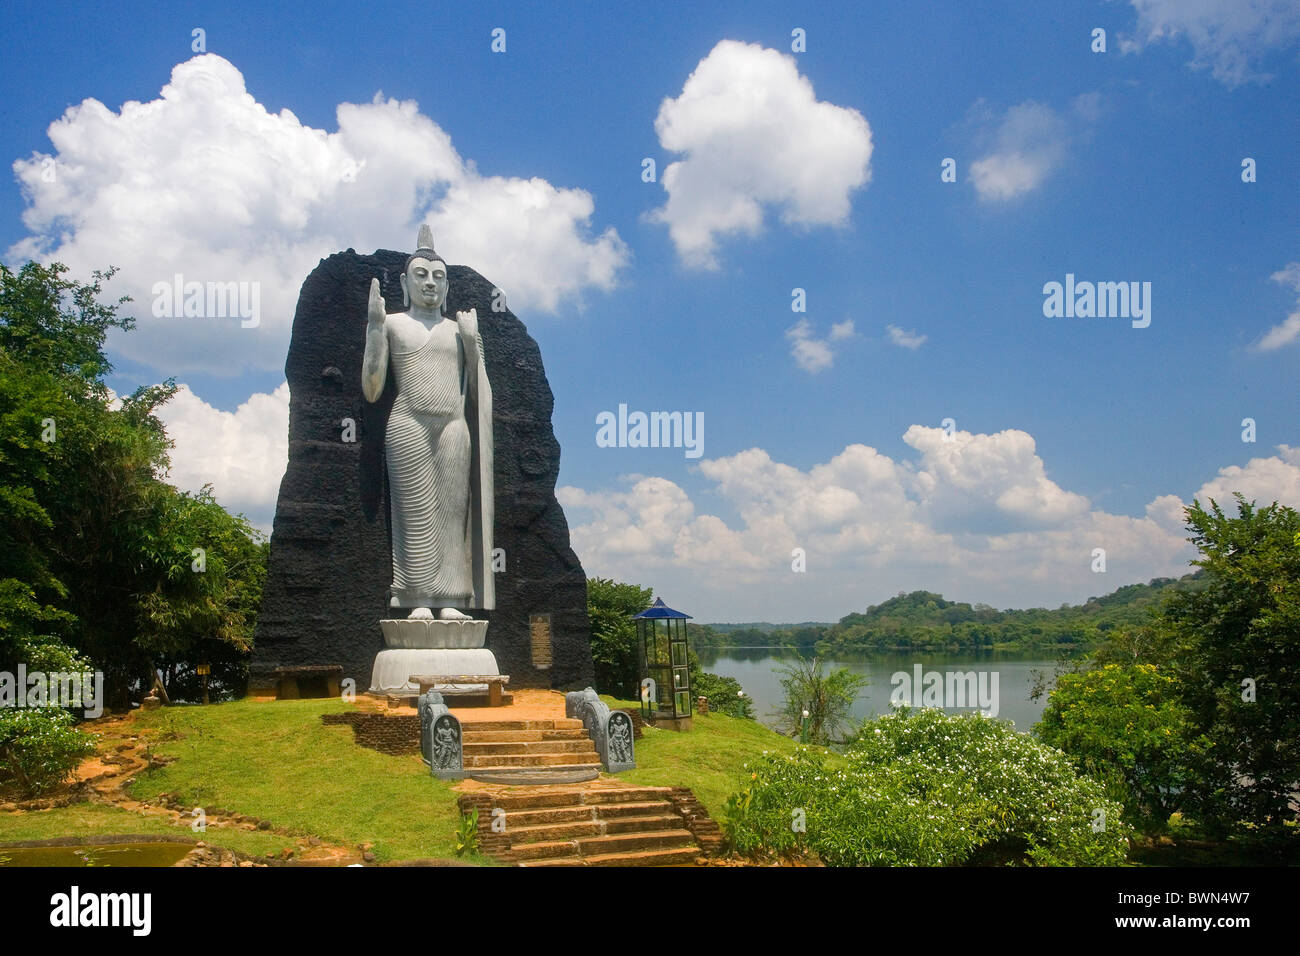 Sri Lanka-Asien in der Nähe von Polonnaruwa Reproduktion Aukana Buddha Statue Buddhismus Asien Stockfoto